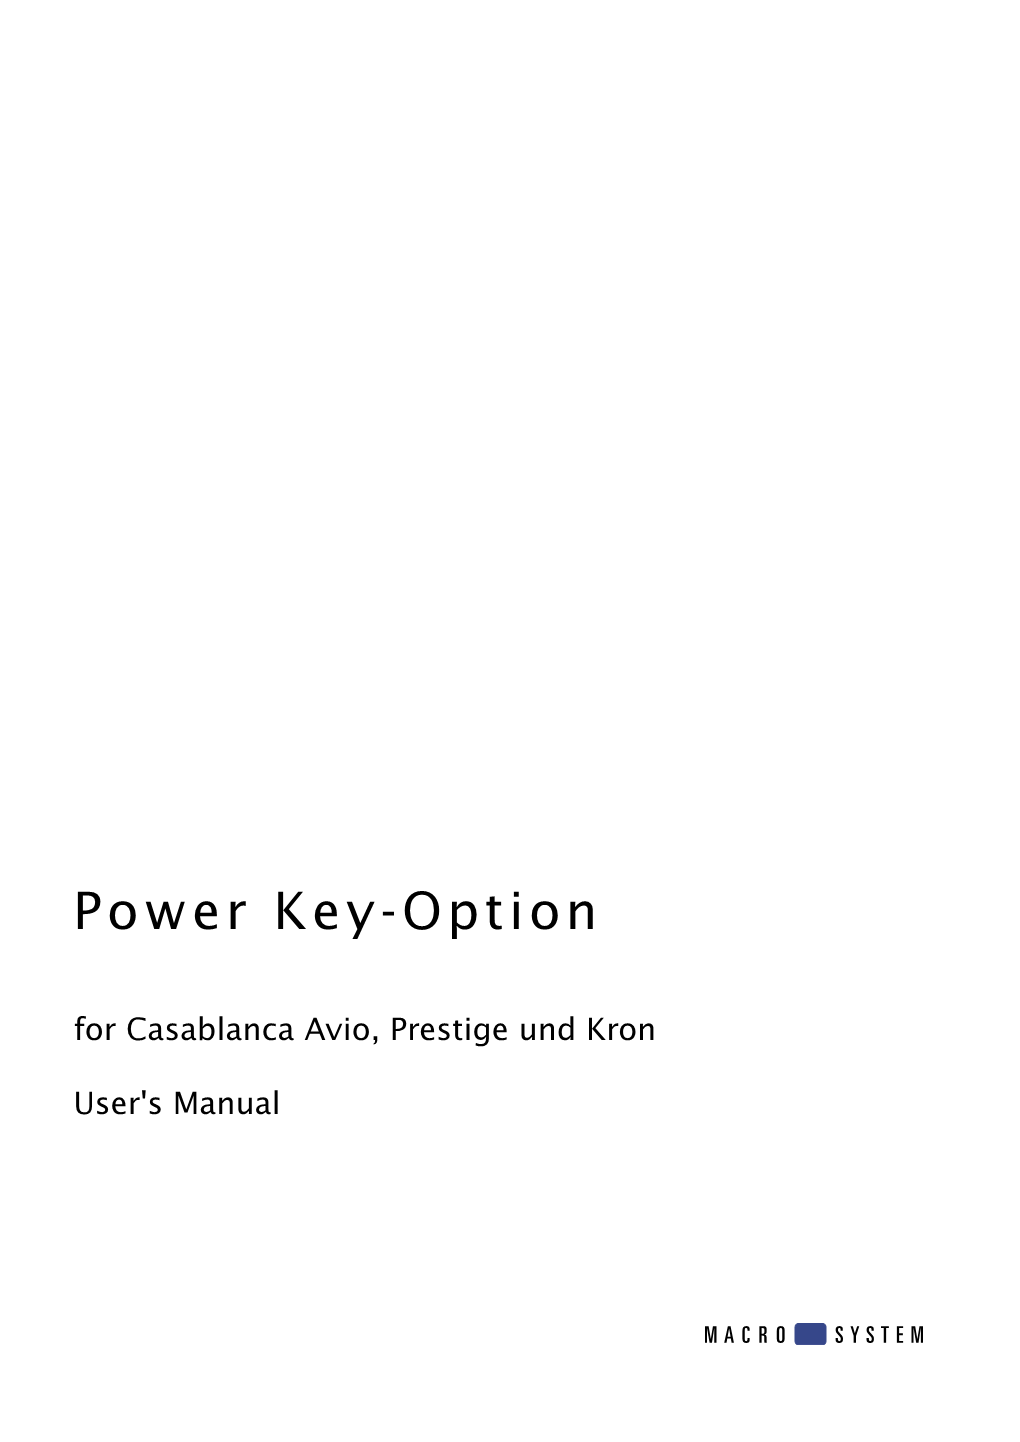 Power Key-Option for Casablanca Avio, Prestige Und Kron